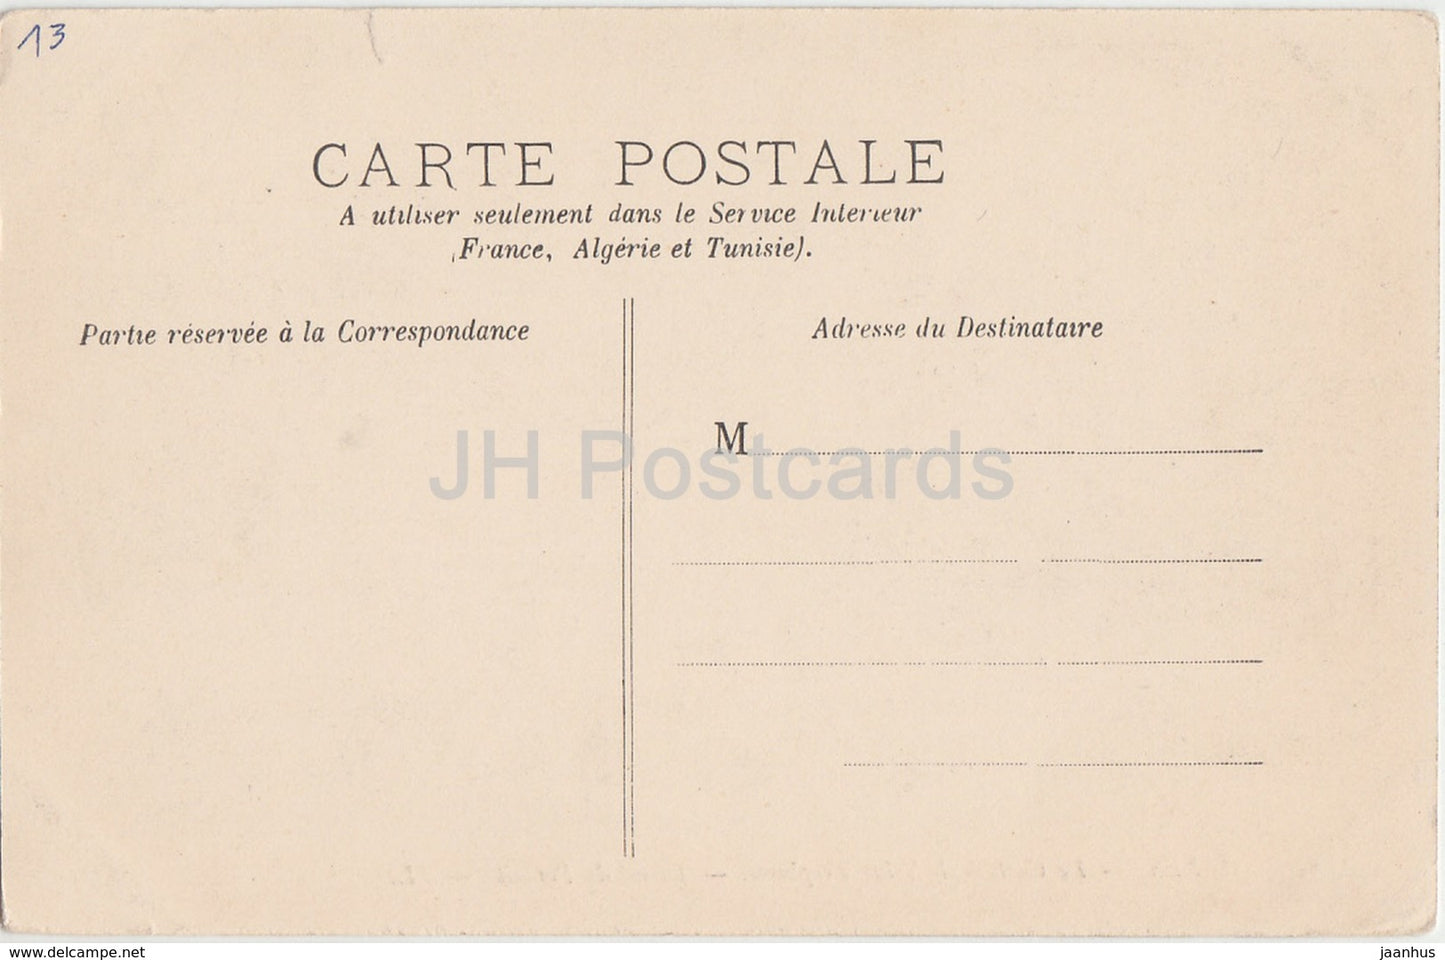 Arles - La Cathédrale Saint Trophime - Détail du Portail - cathédrale - 28 - carte postale ancienne - France - inutilisée